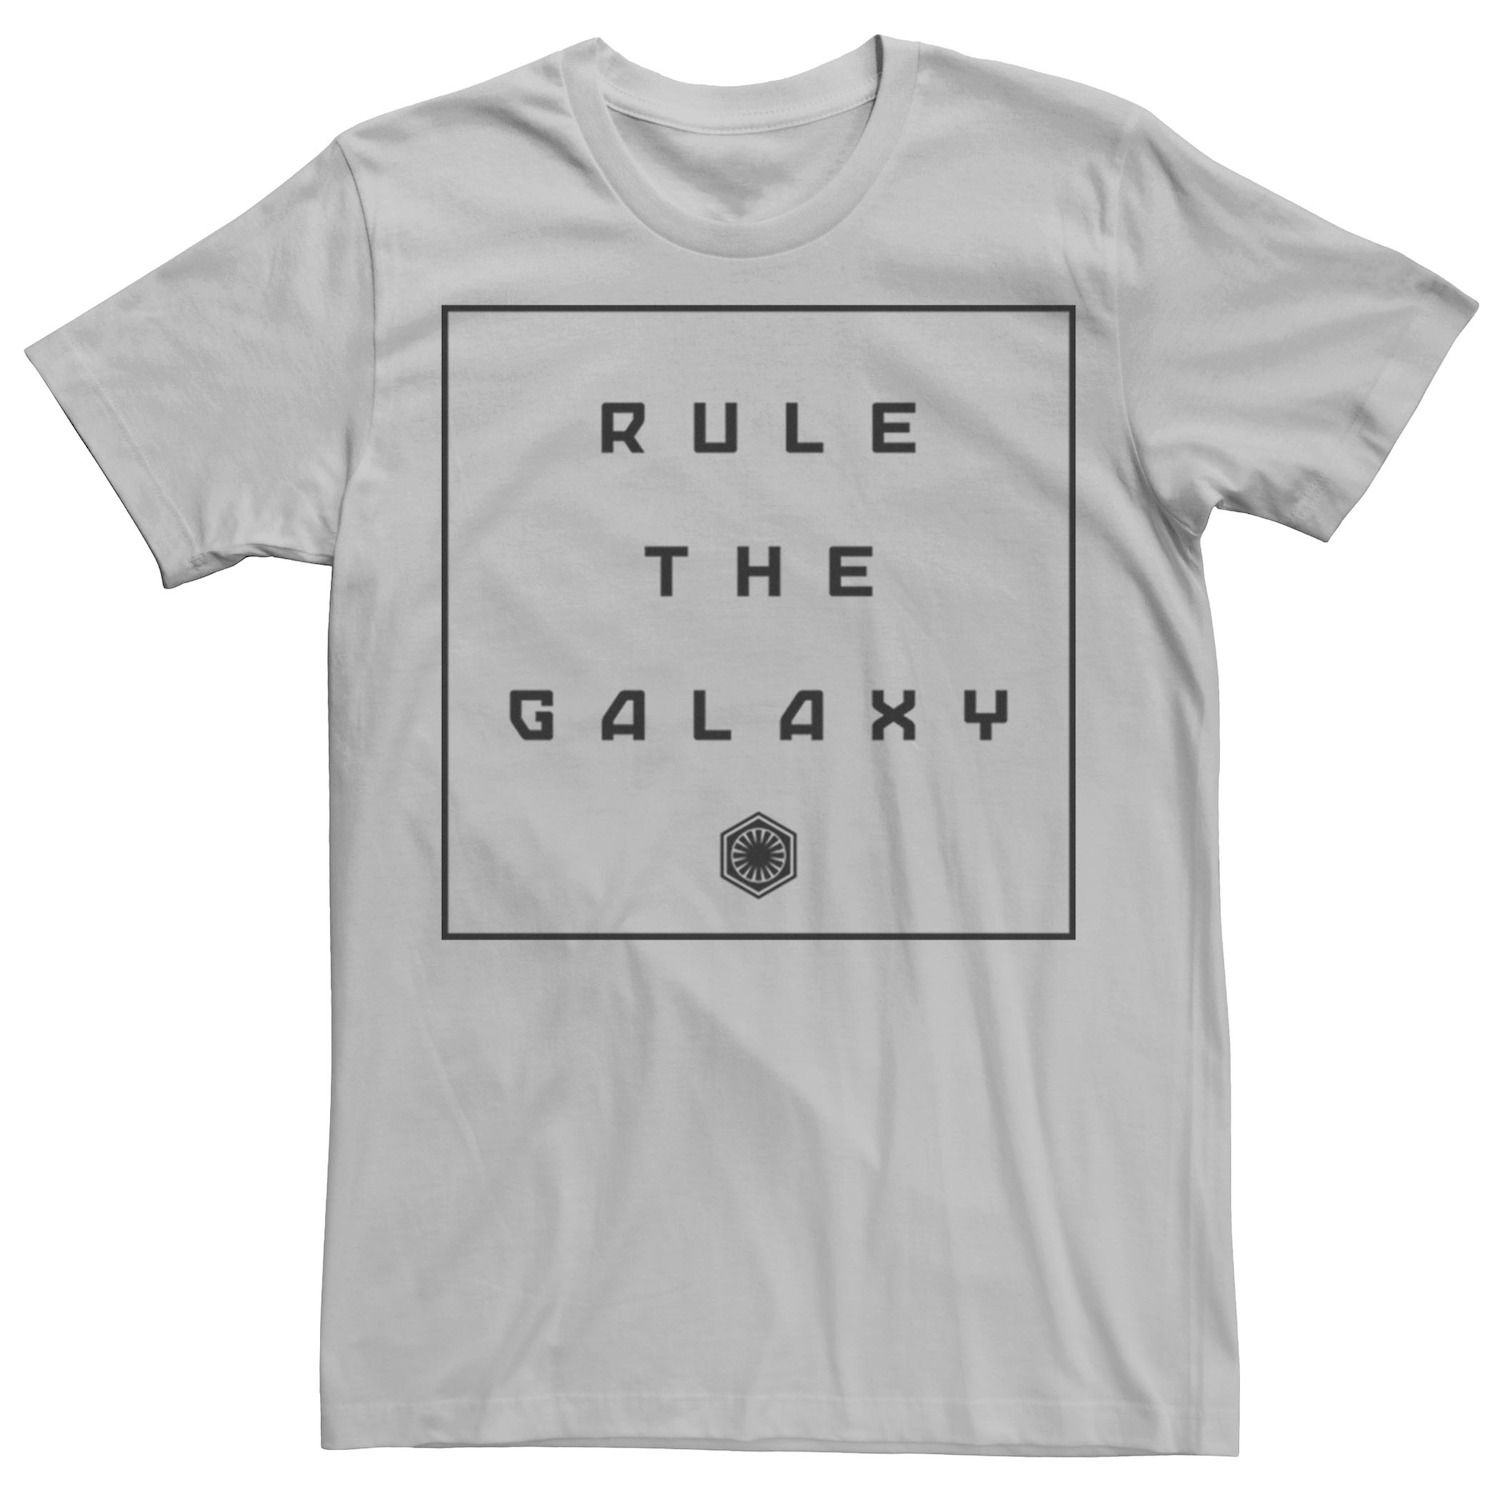 Мужская футболка с пейзажем «Звездные войны» «Правь галактикой» Star Wars, серебристый